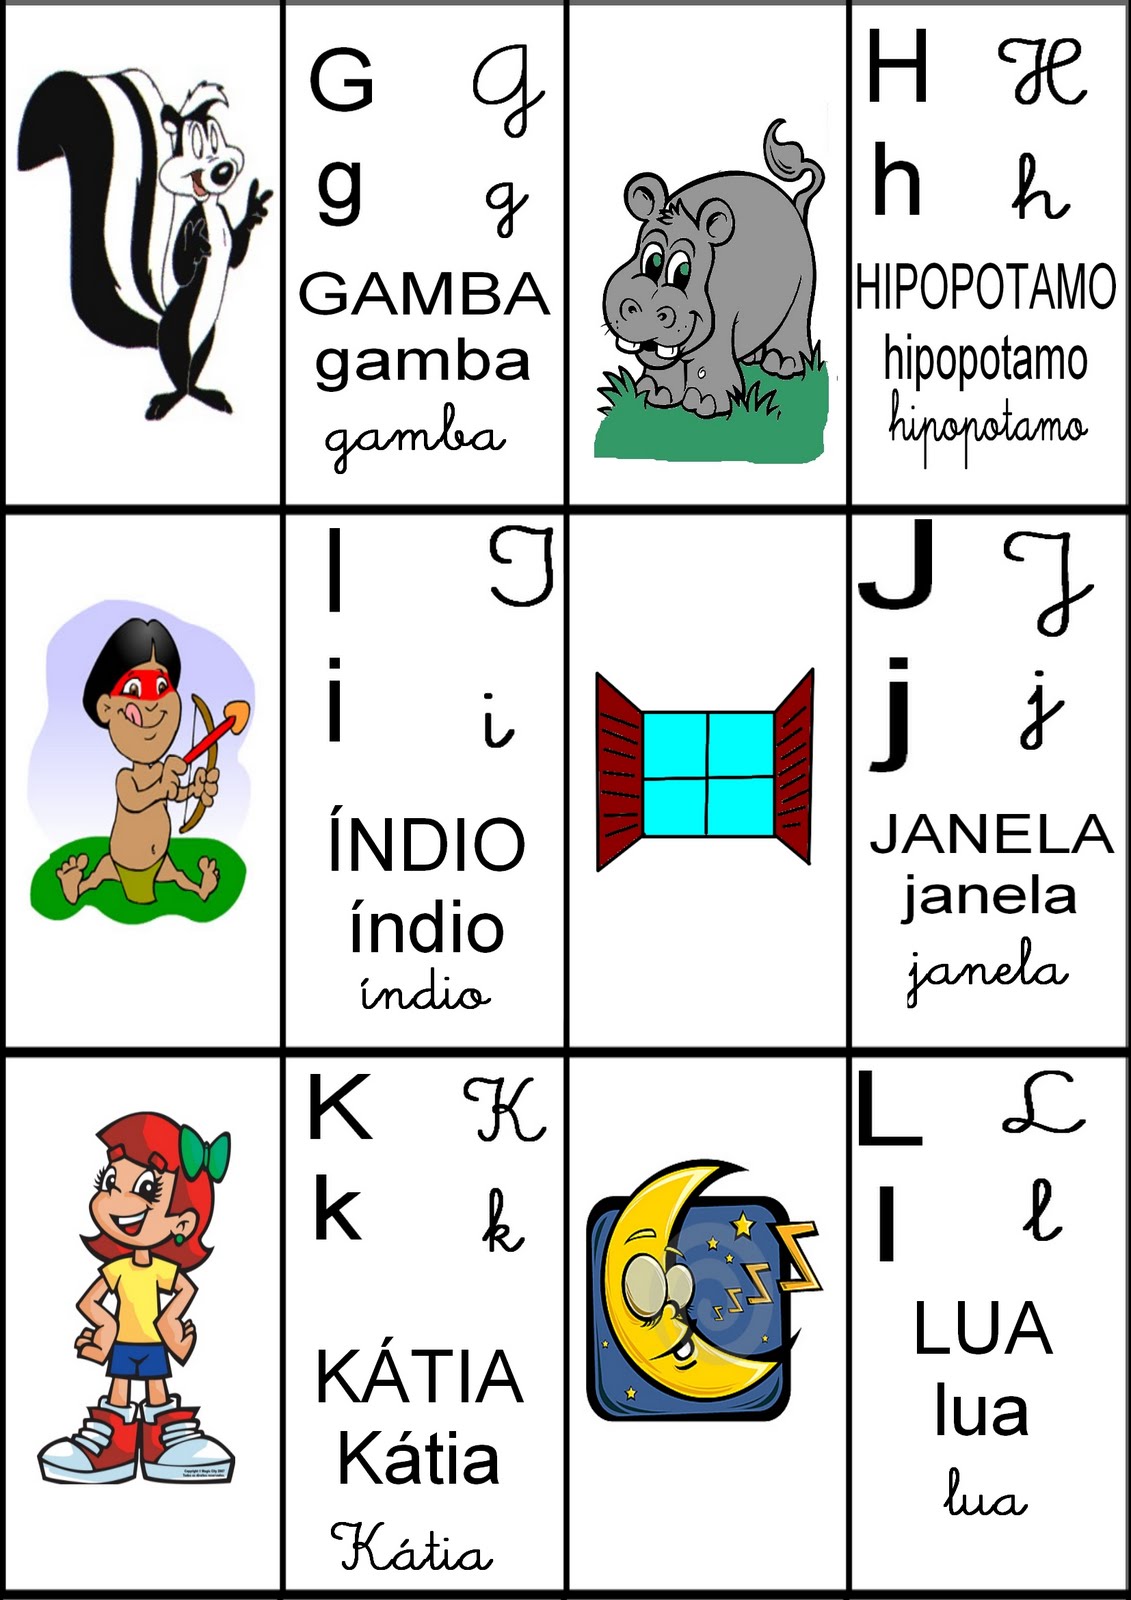 Aprendendo sempre mais!: Baralho do alfabeto